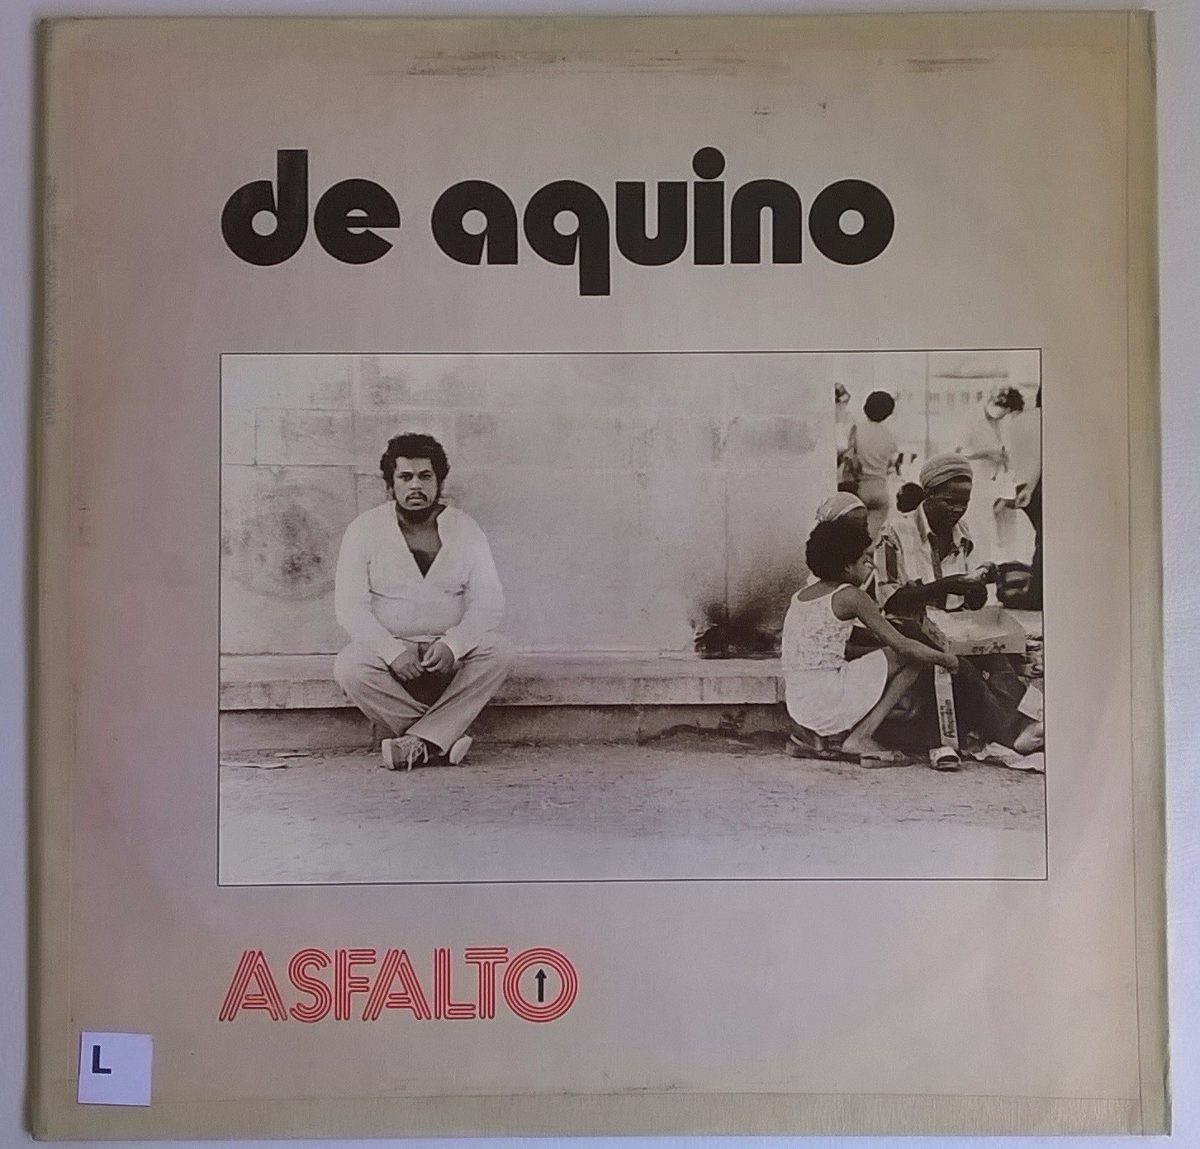 Composição de Ederaldo Gentil e João de Aquino gravada por João de Aquino no disco "Asfalto" (1980).